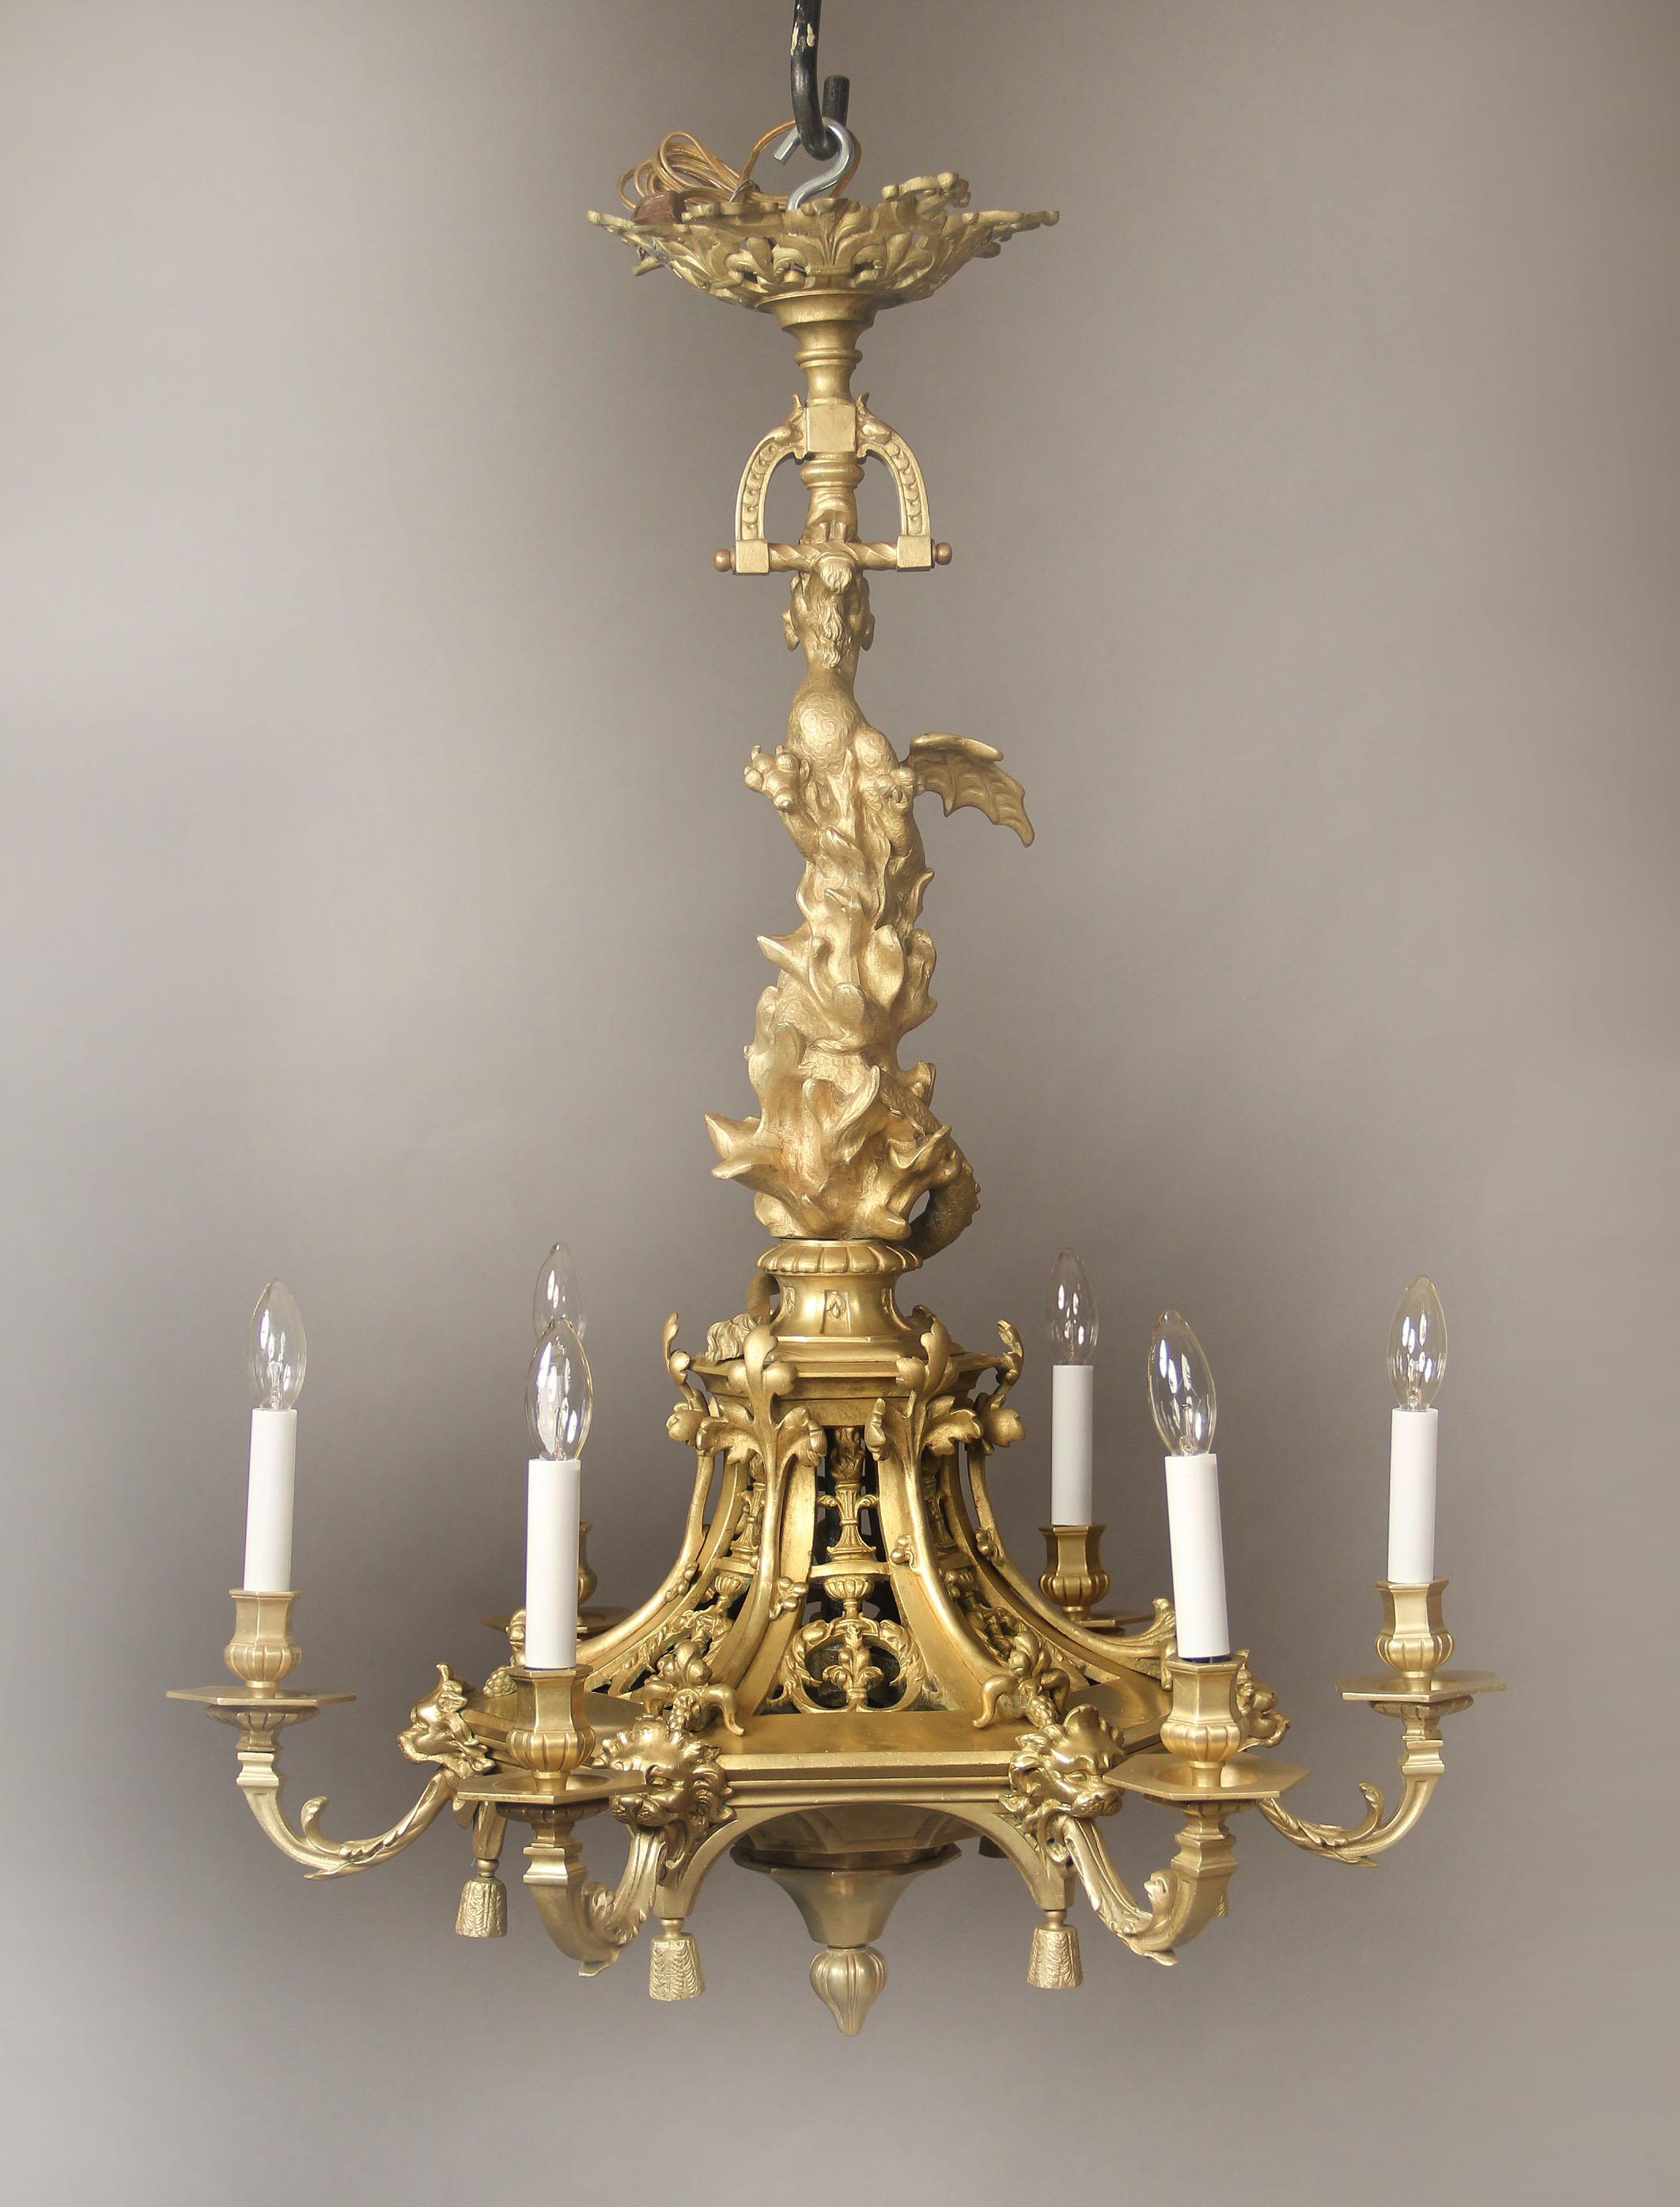 Intéressant lustre à six lumières en bronze doré de la fin du XIXe siècle

Le cou est conçu comme un dragon volant à travers les flammes, les masques de lion menant à six lumières périphériques.

Si vous cherchez un lustre, une lanterne ou un